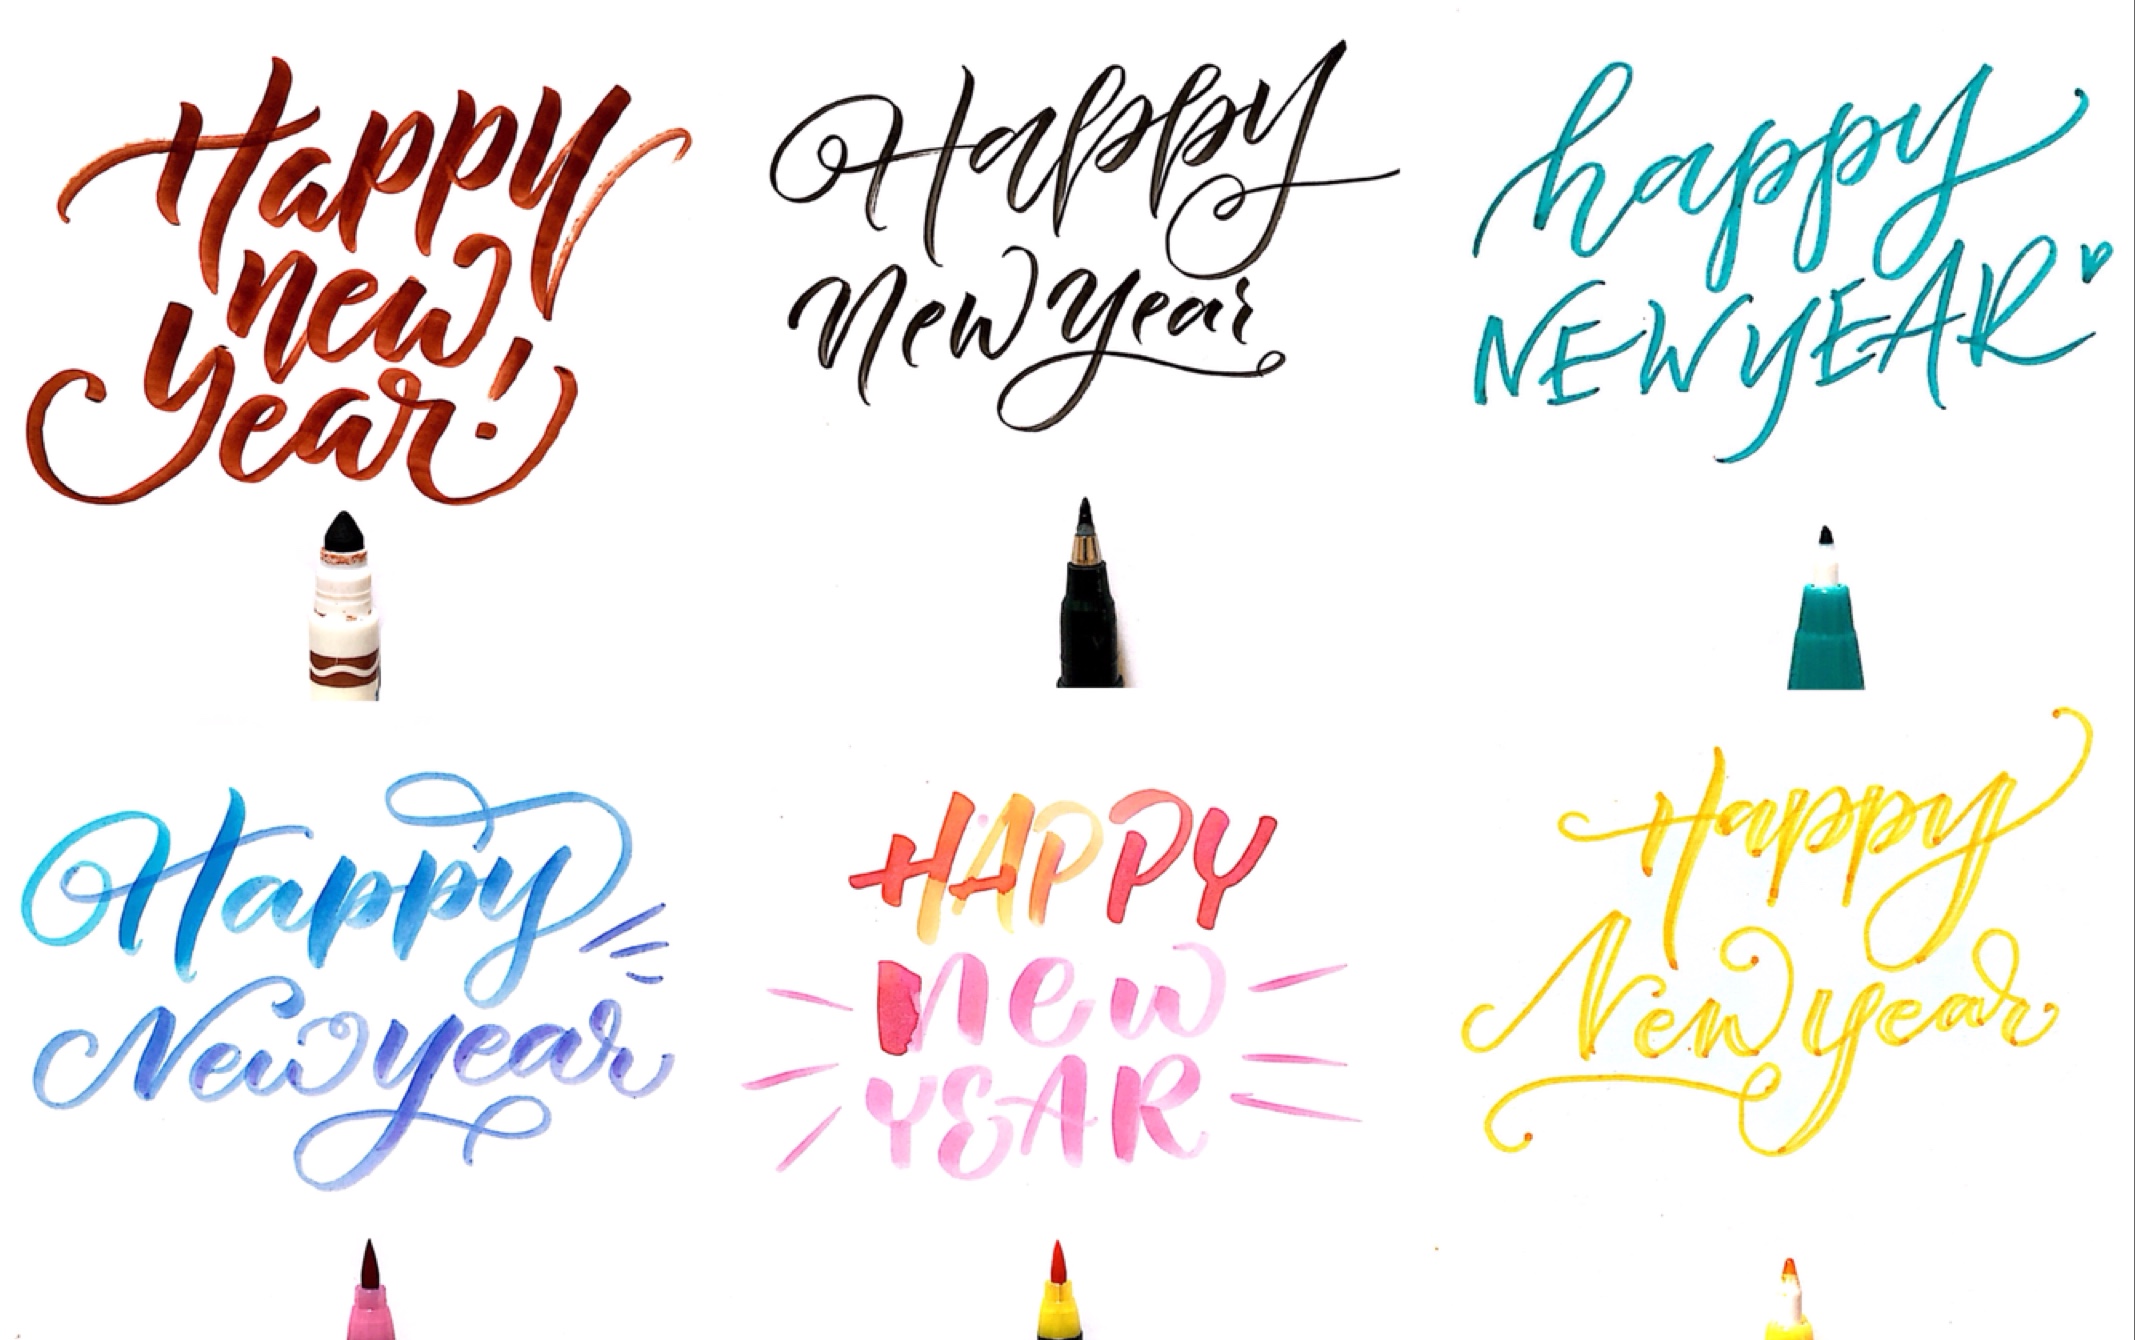 【手写英文】6种happy new year的写法教程 brushletter手写新年贺卡